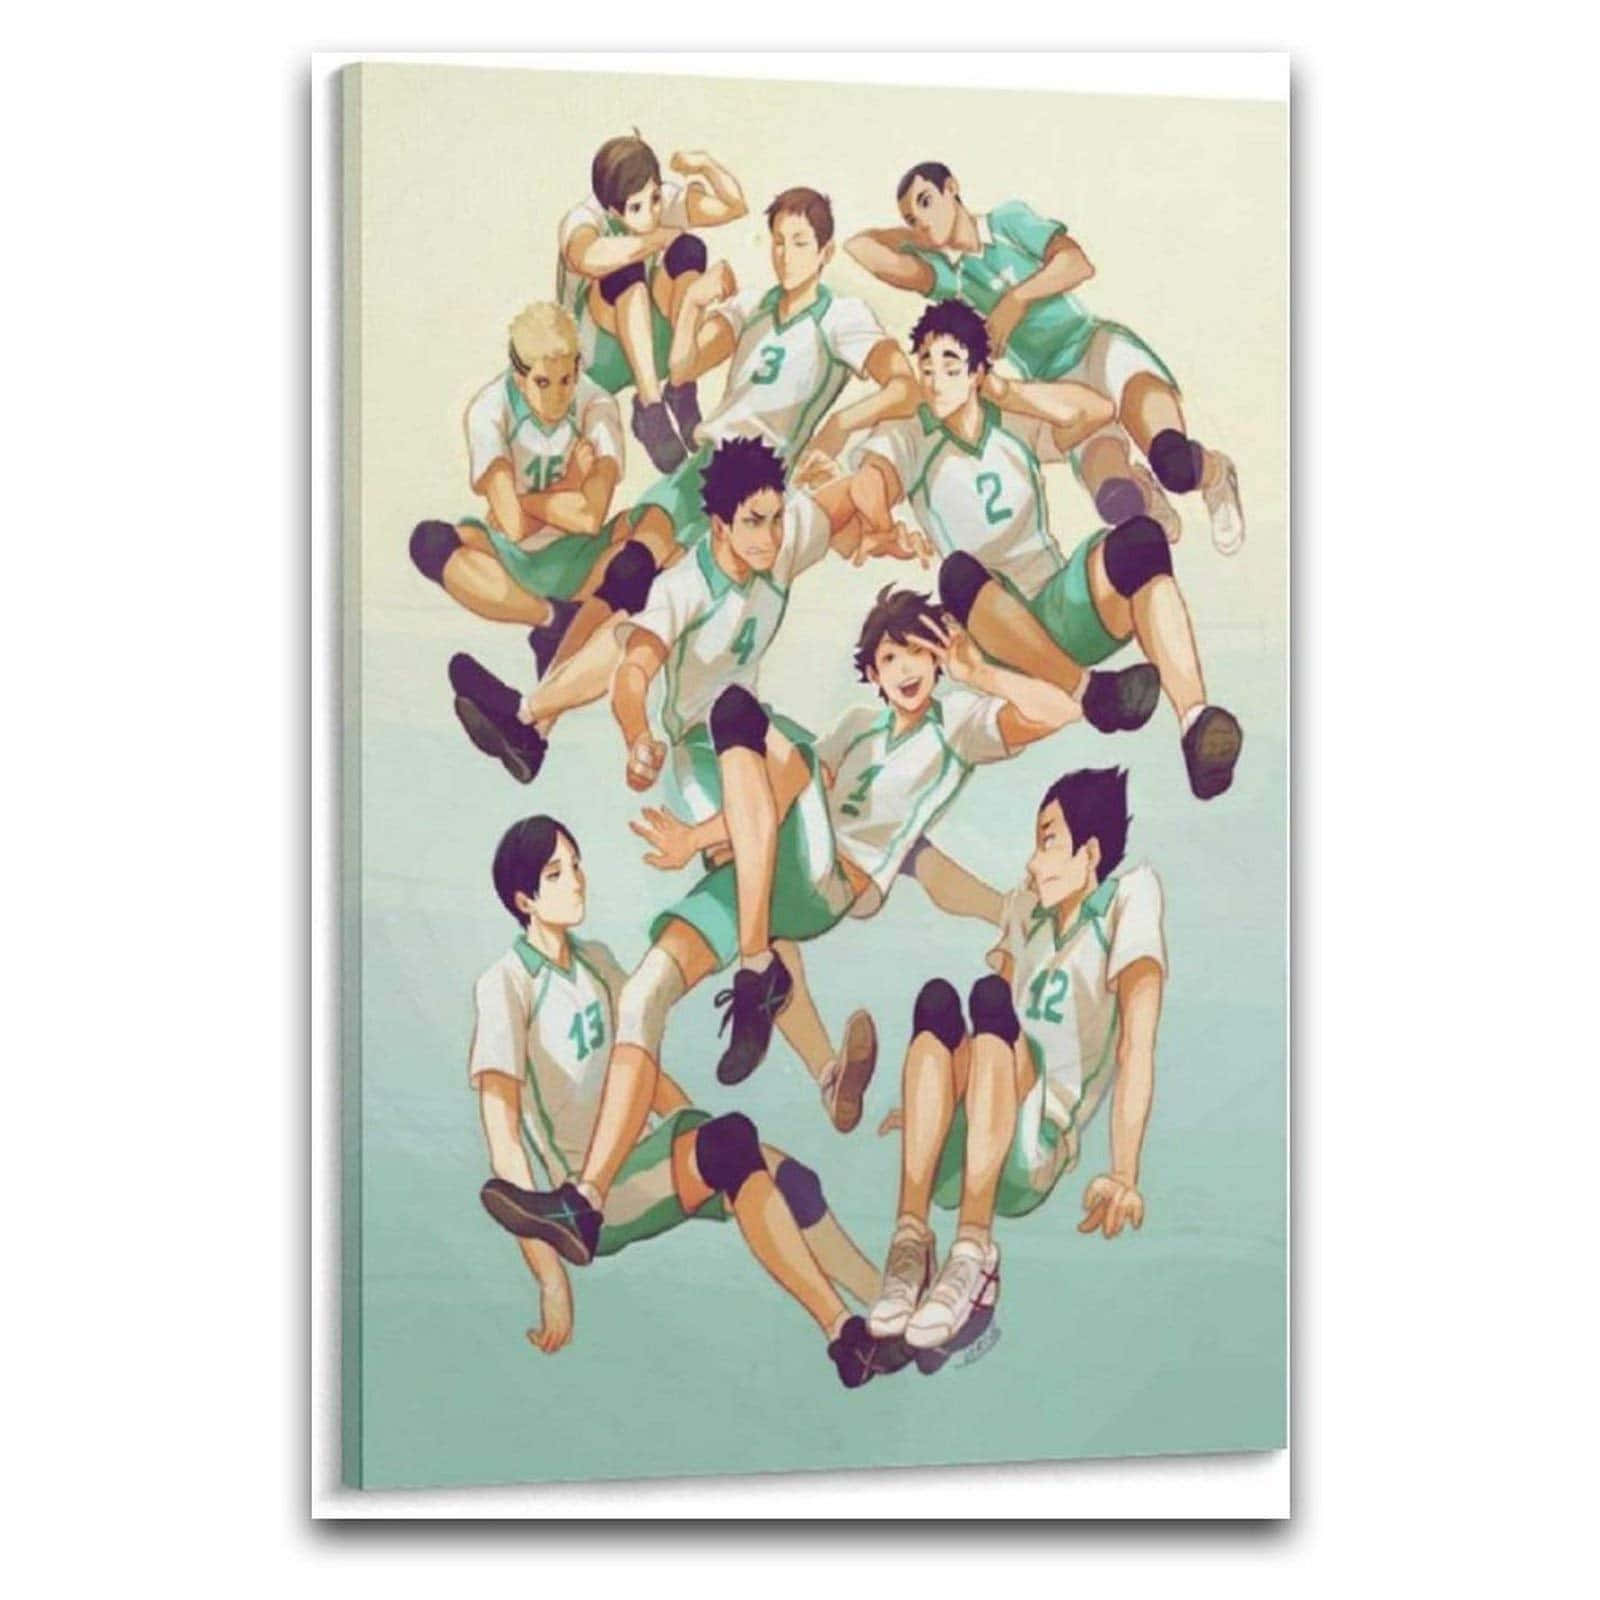 Zufriedenheitbeim Volleyball Für Die Aoba Johsai Spieler Wallpaper